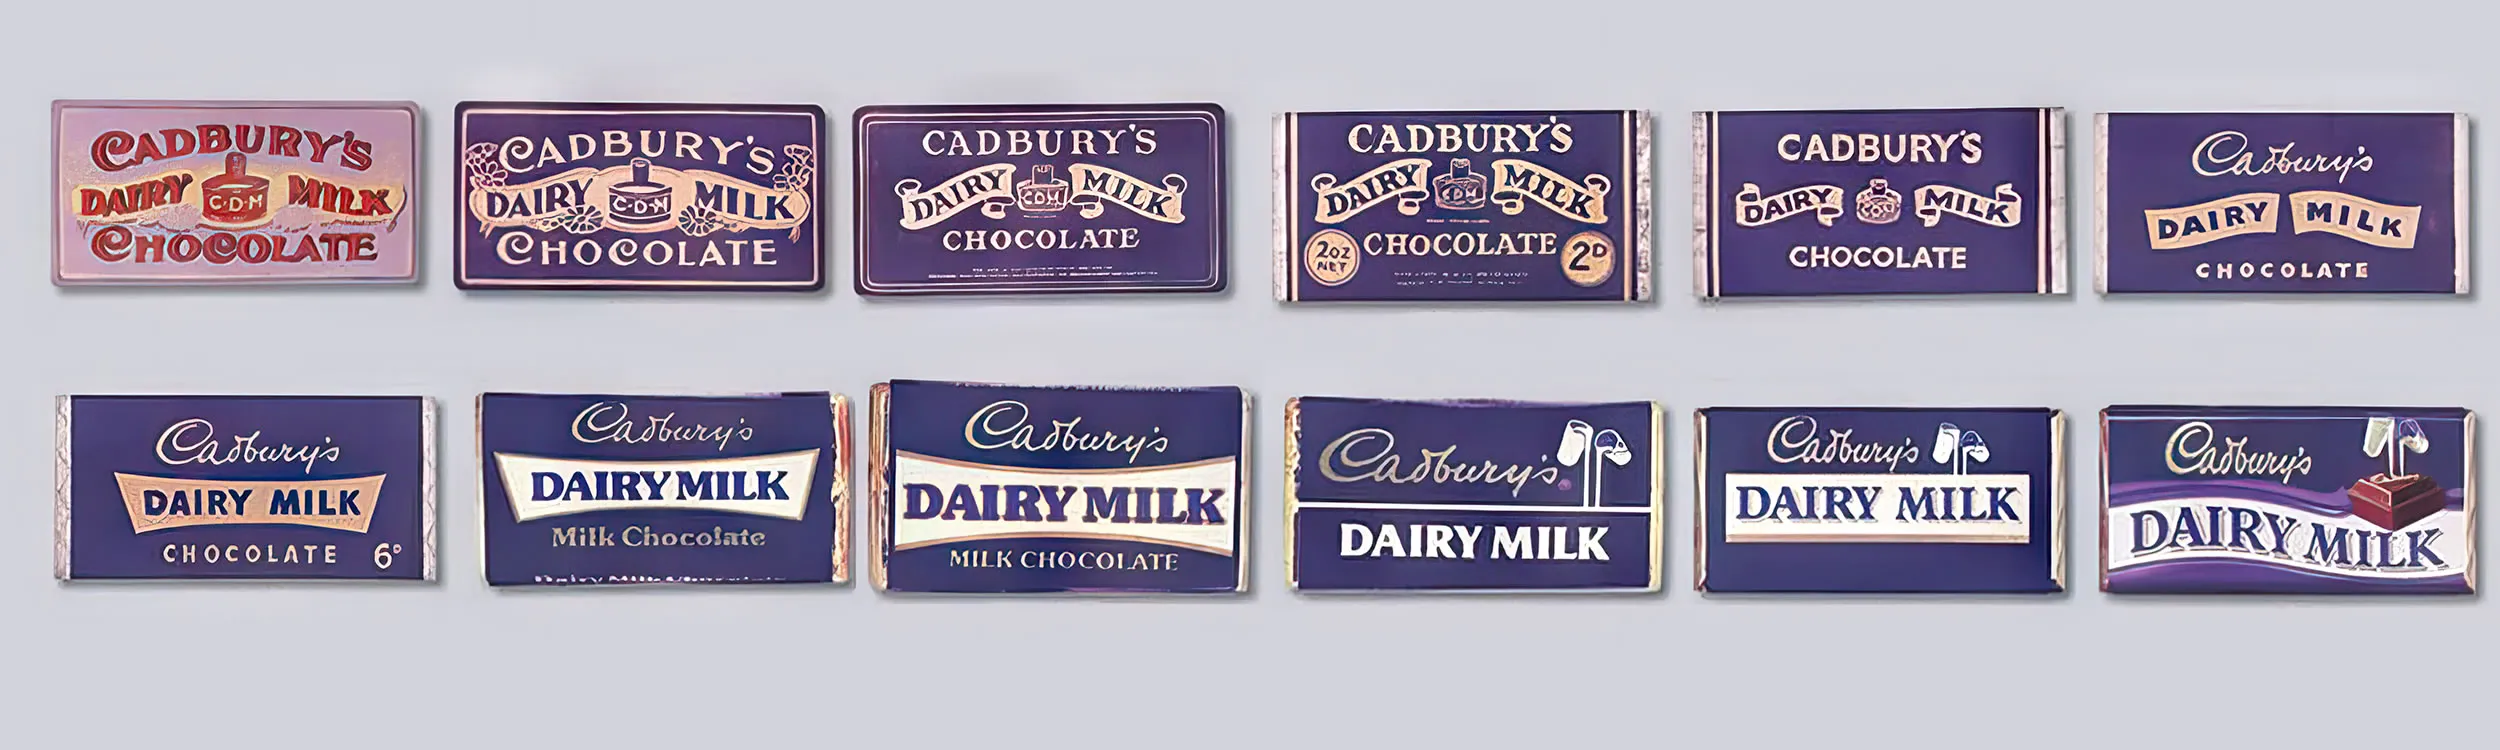 Cadbury's: A Family Story